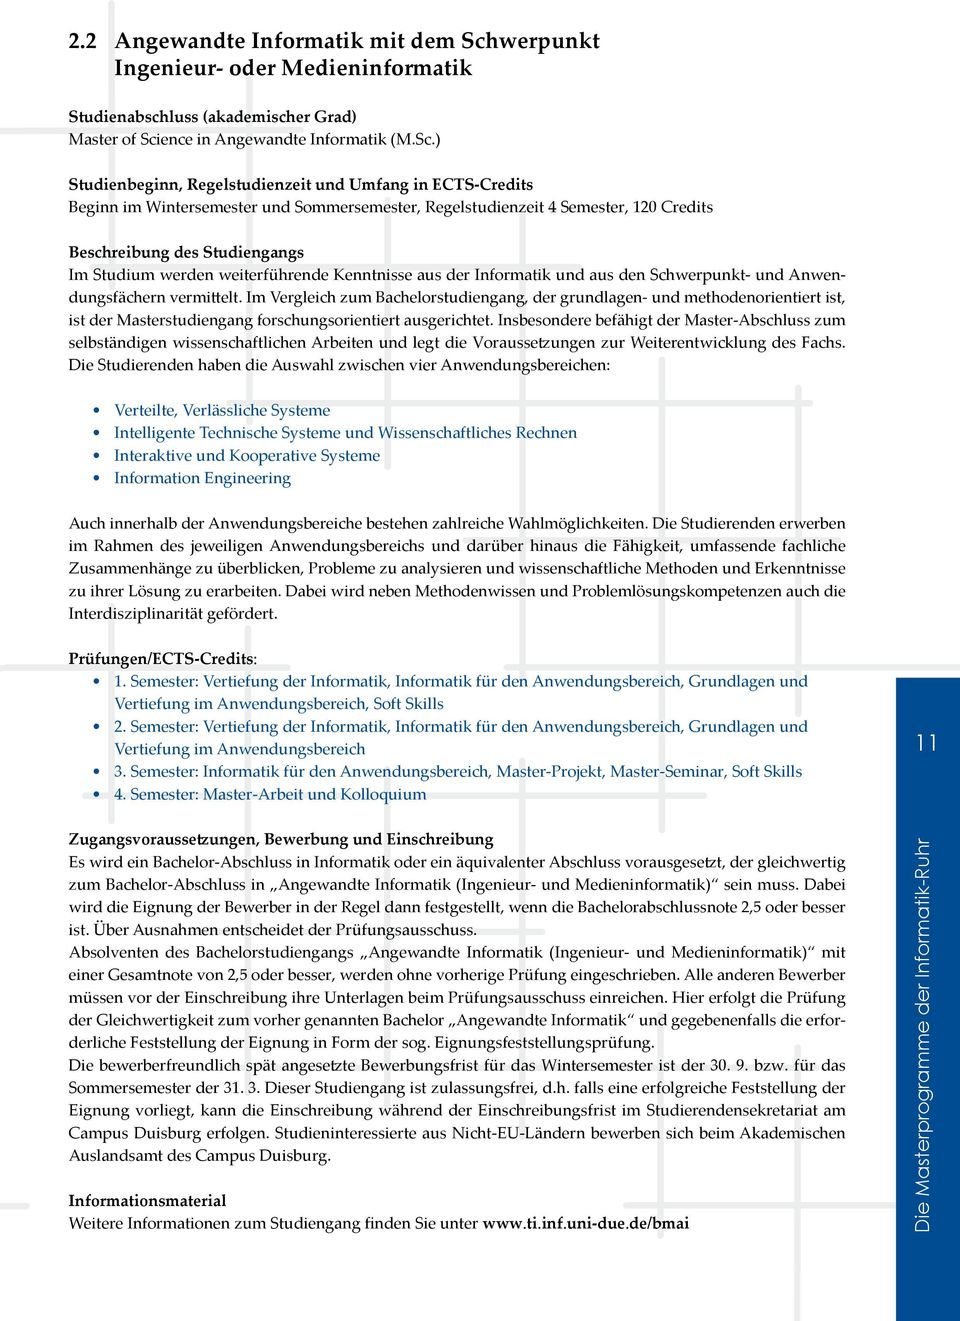 ence in Angewandte Informatik (M.Sc.